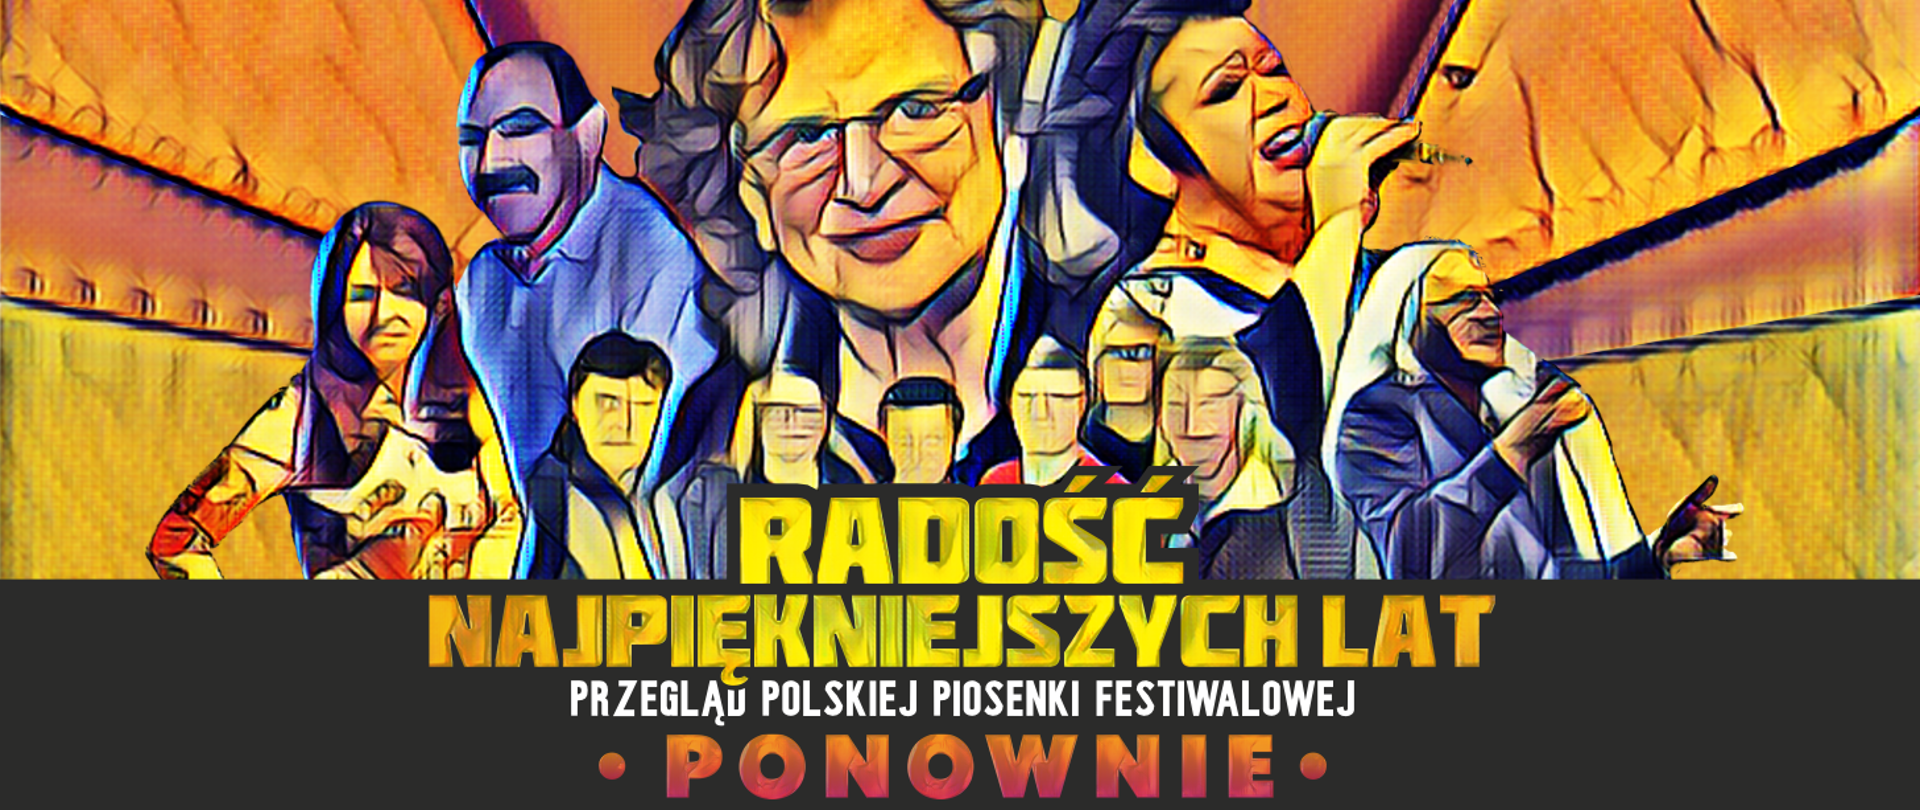 baner promujący koncert "Radość najpiękniejszych lat" z sylwetkami najwiekszych artystów polskiej piosenki kilku ostatnich dekad 